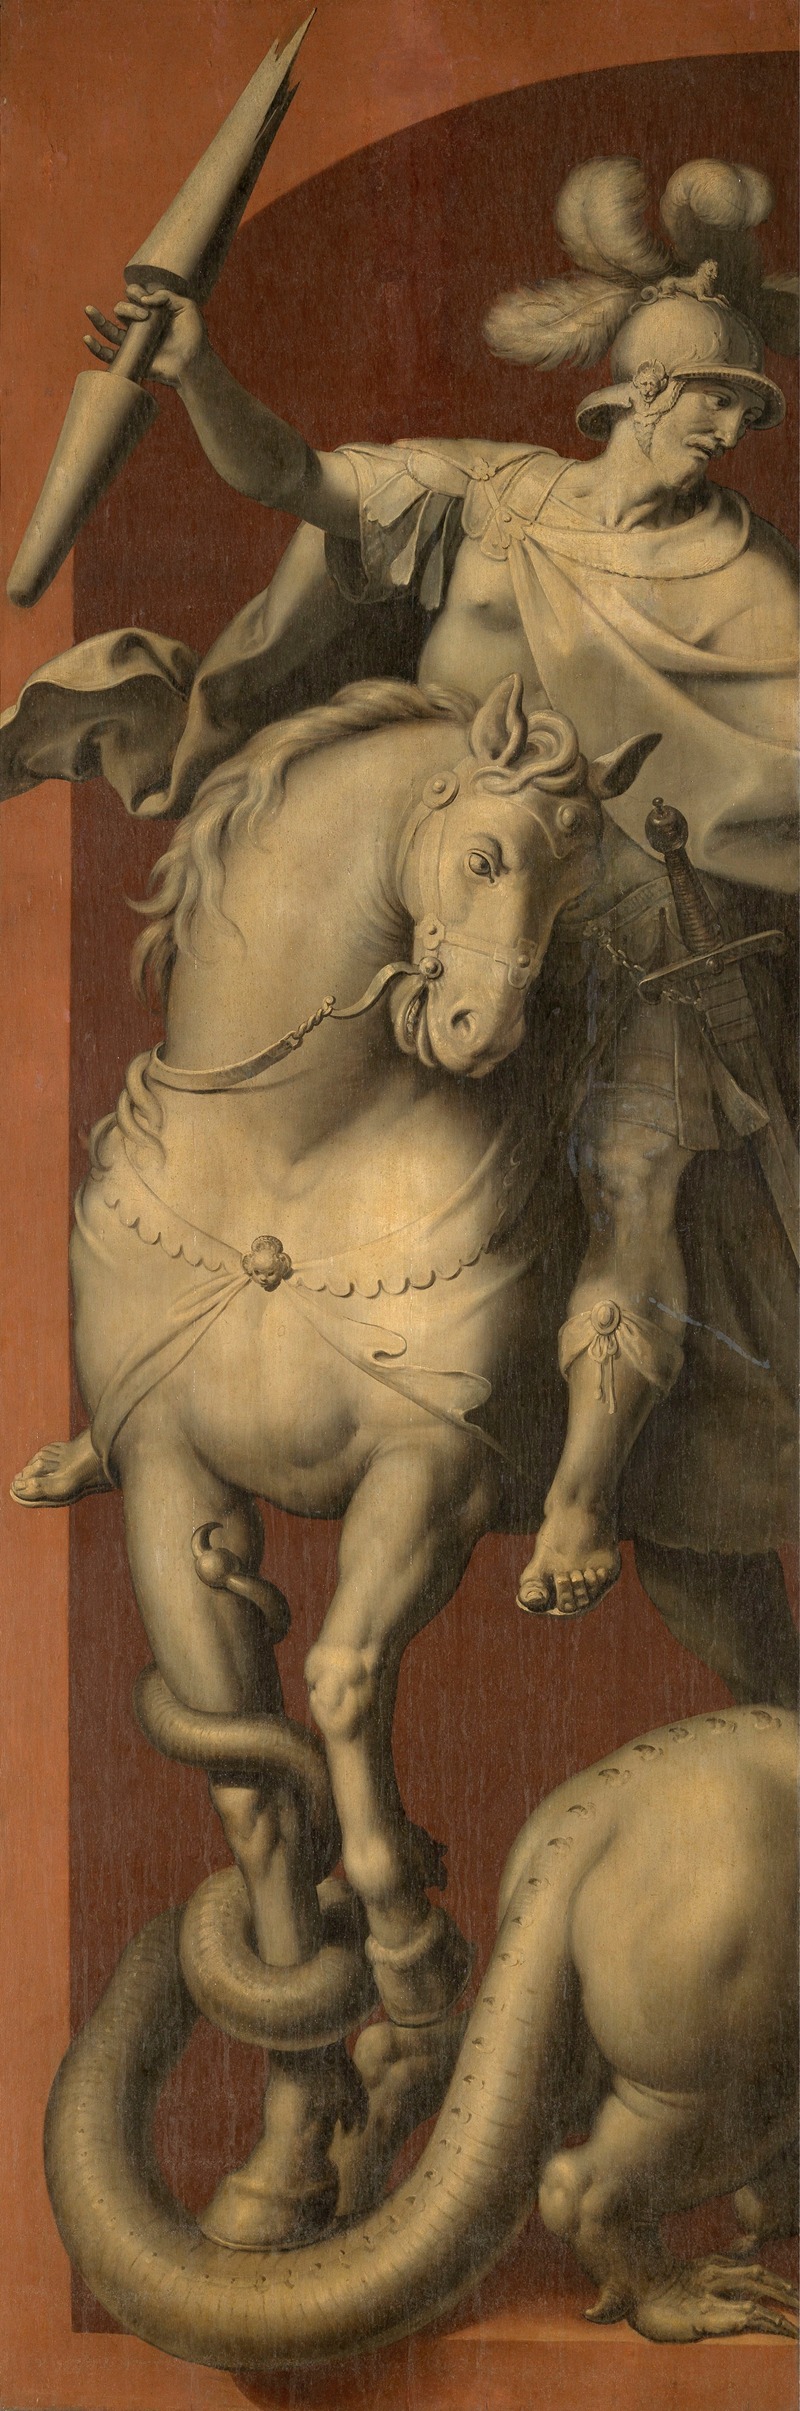 Ambrosius Francken I - Saint George on Horseback